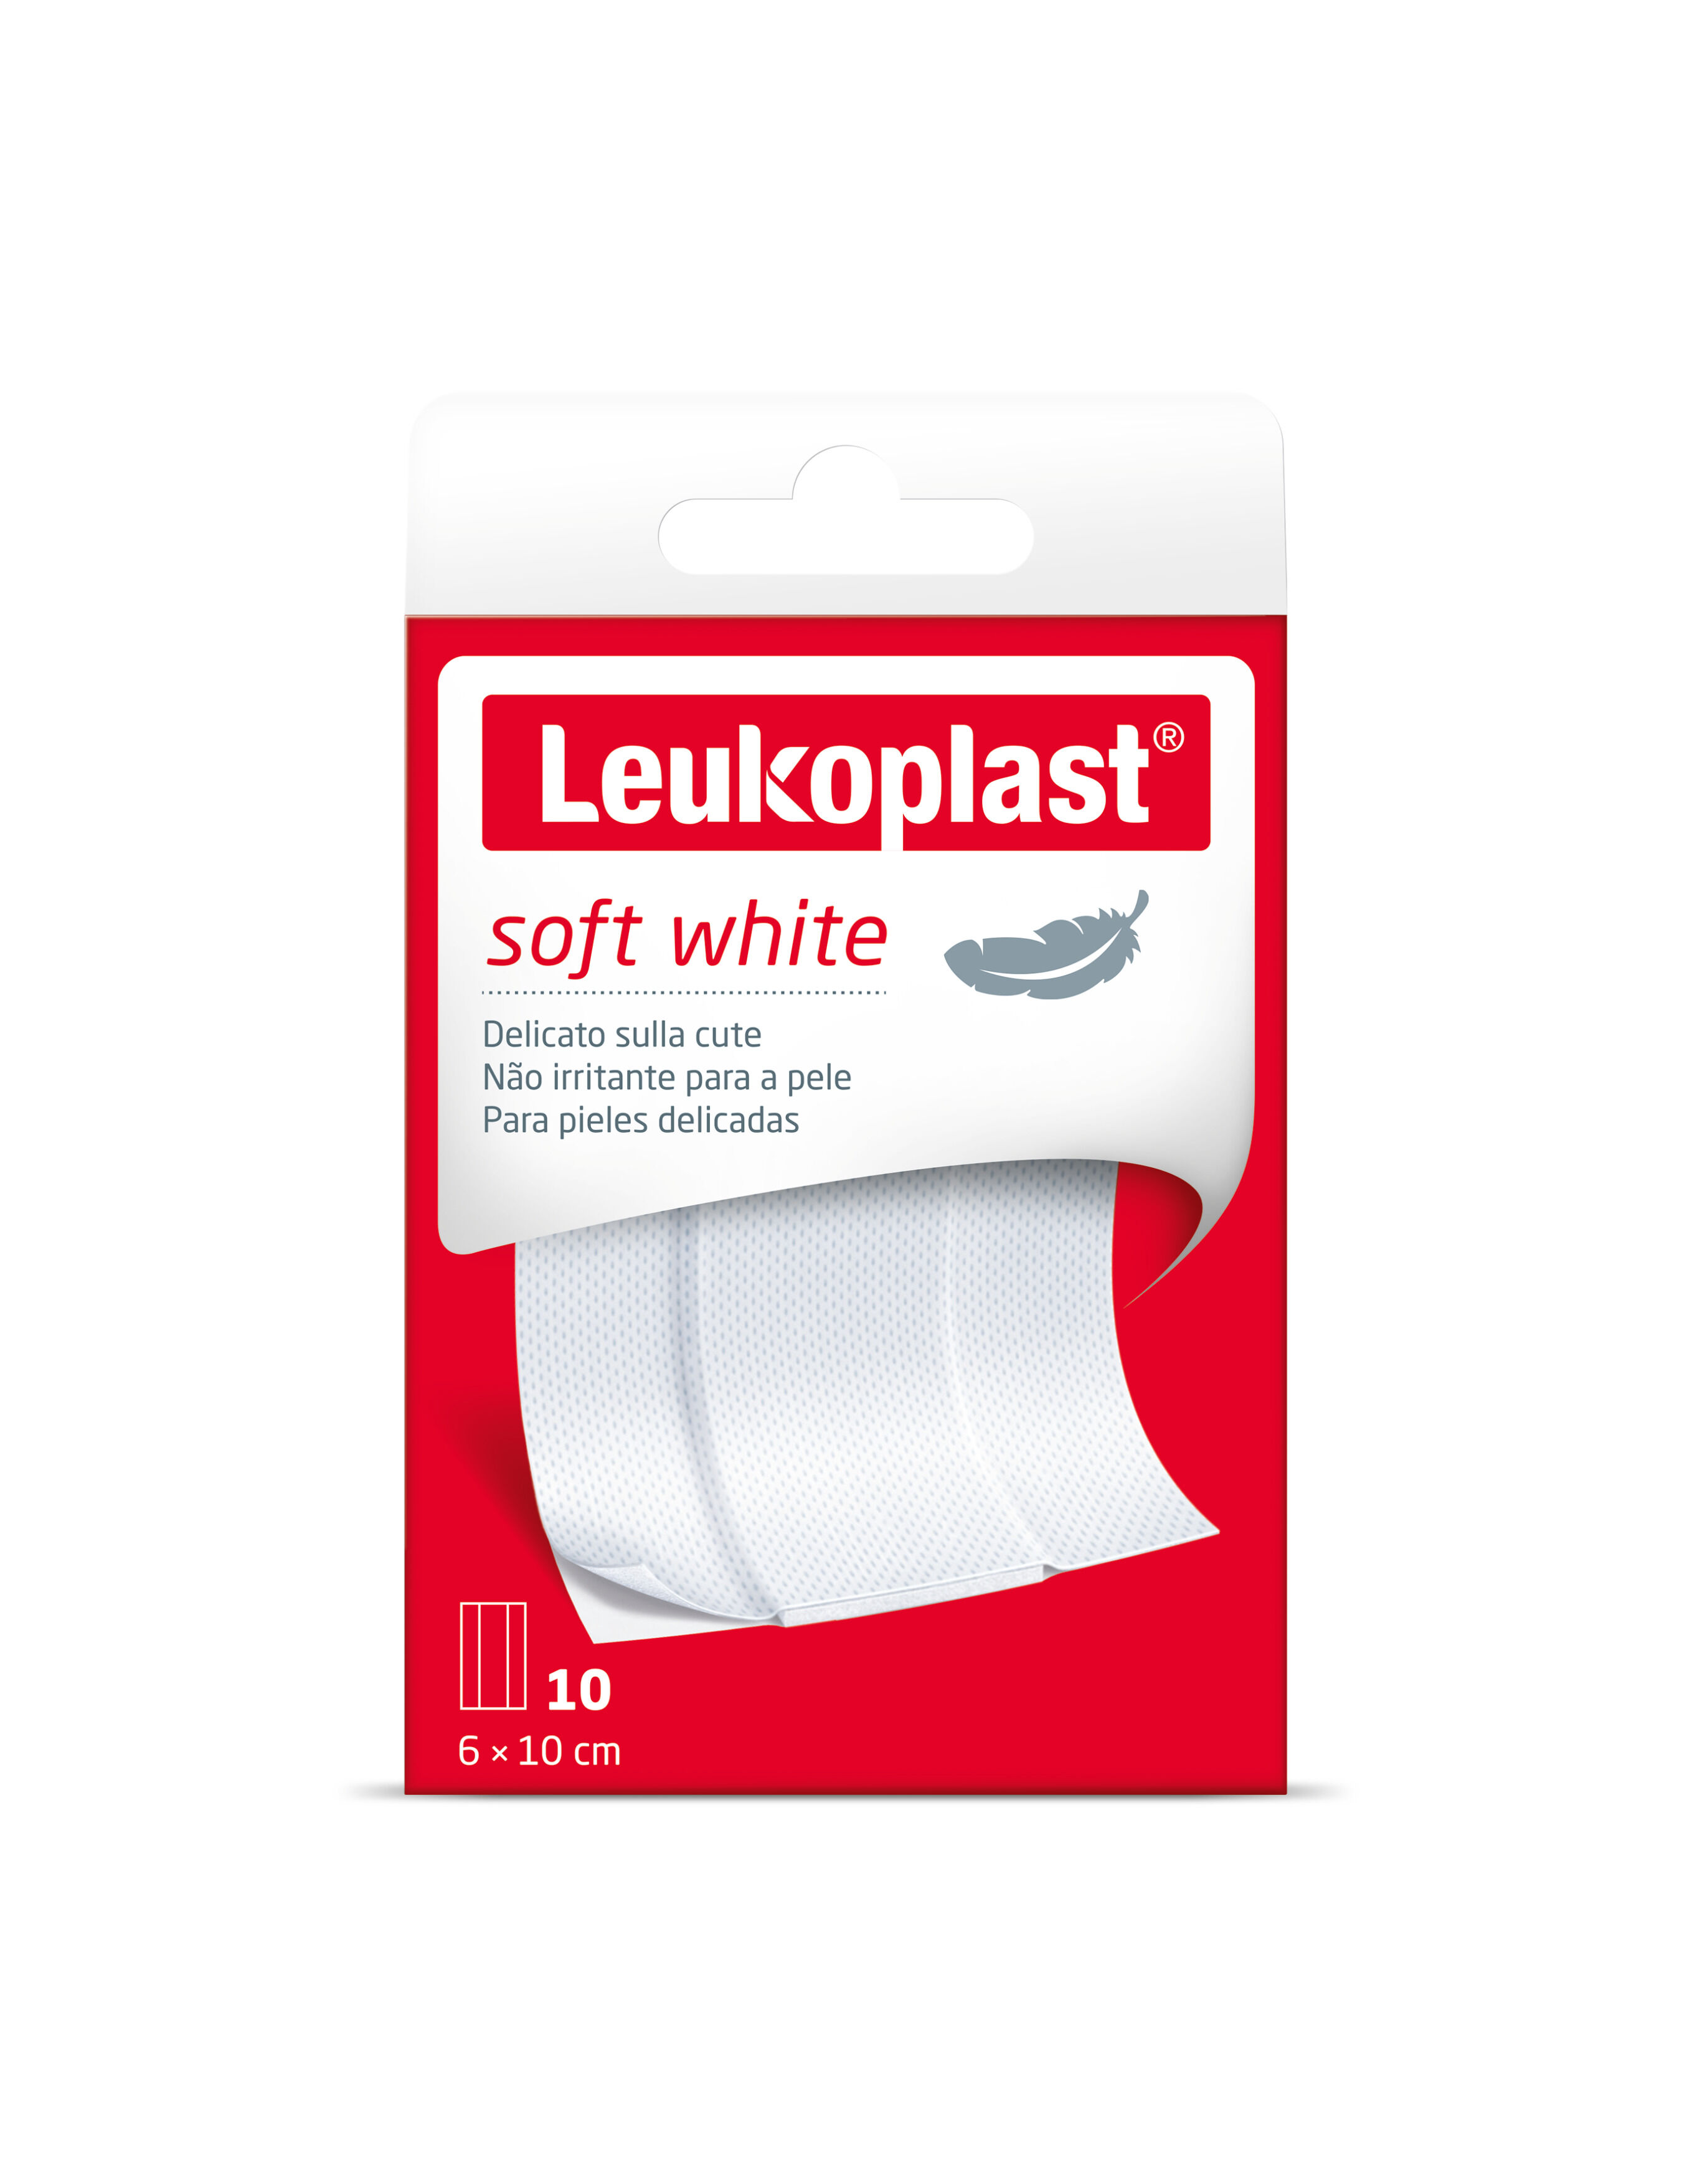 Bsn Medical Leukoplast Soft White Cerotti 1mx6cm 10 Pezzi - Protezione Delicata per Pelli Sensibili